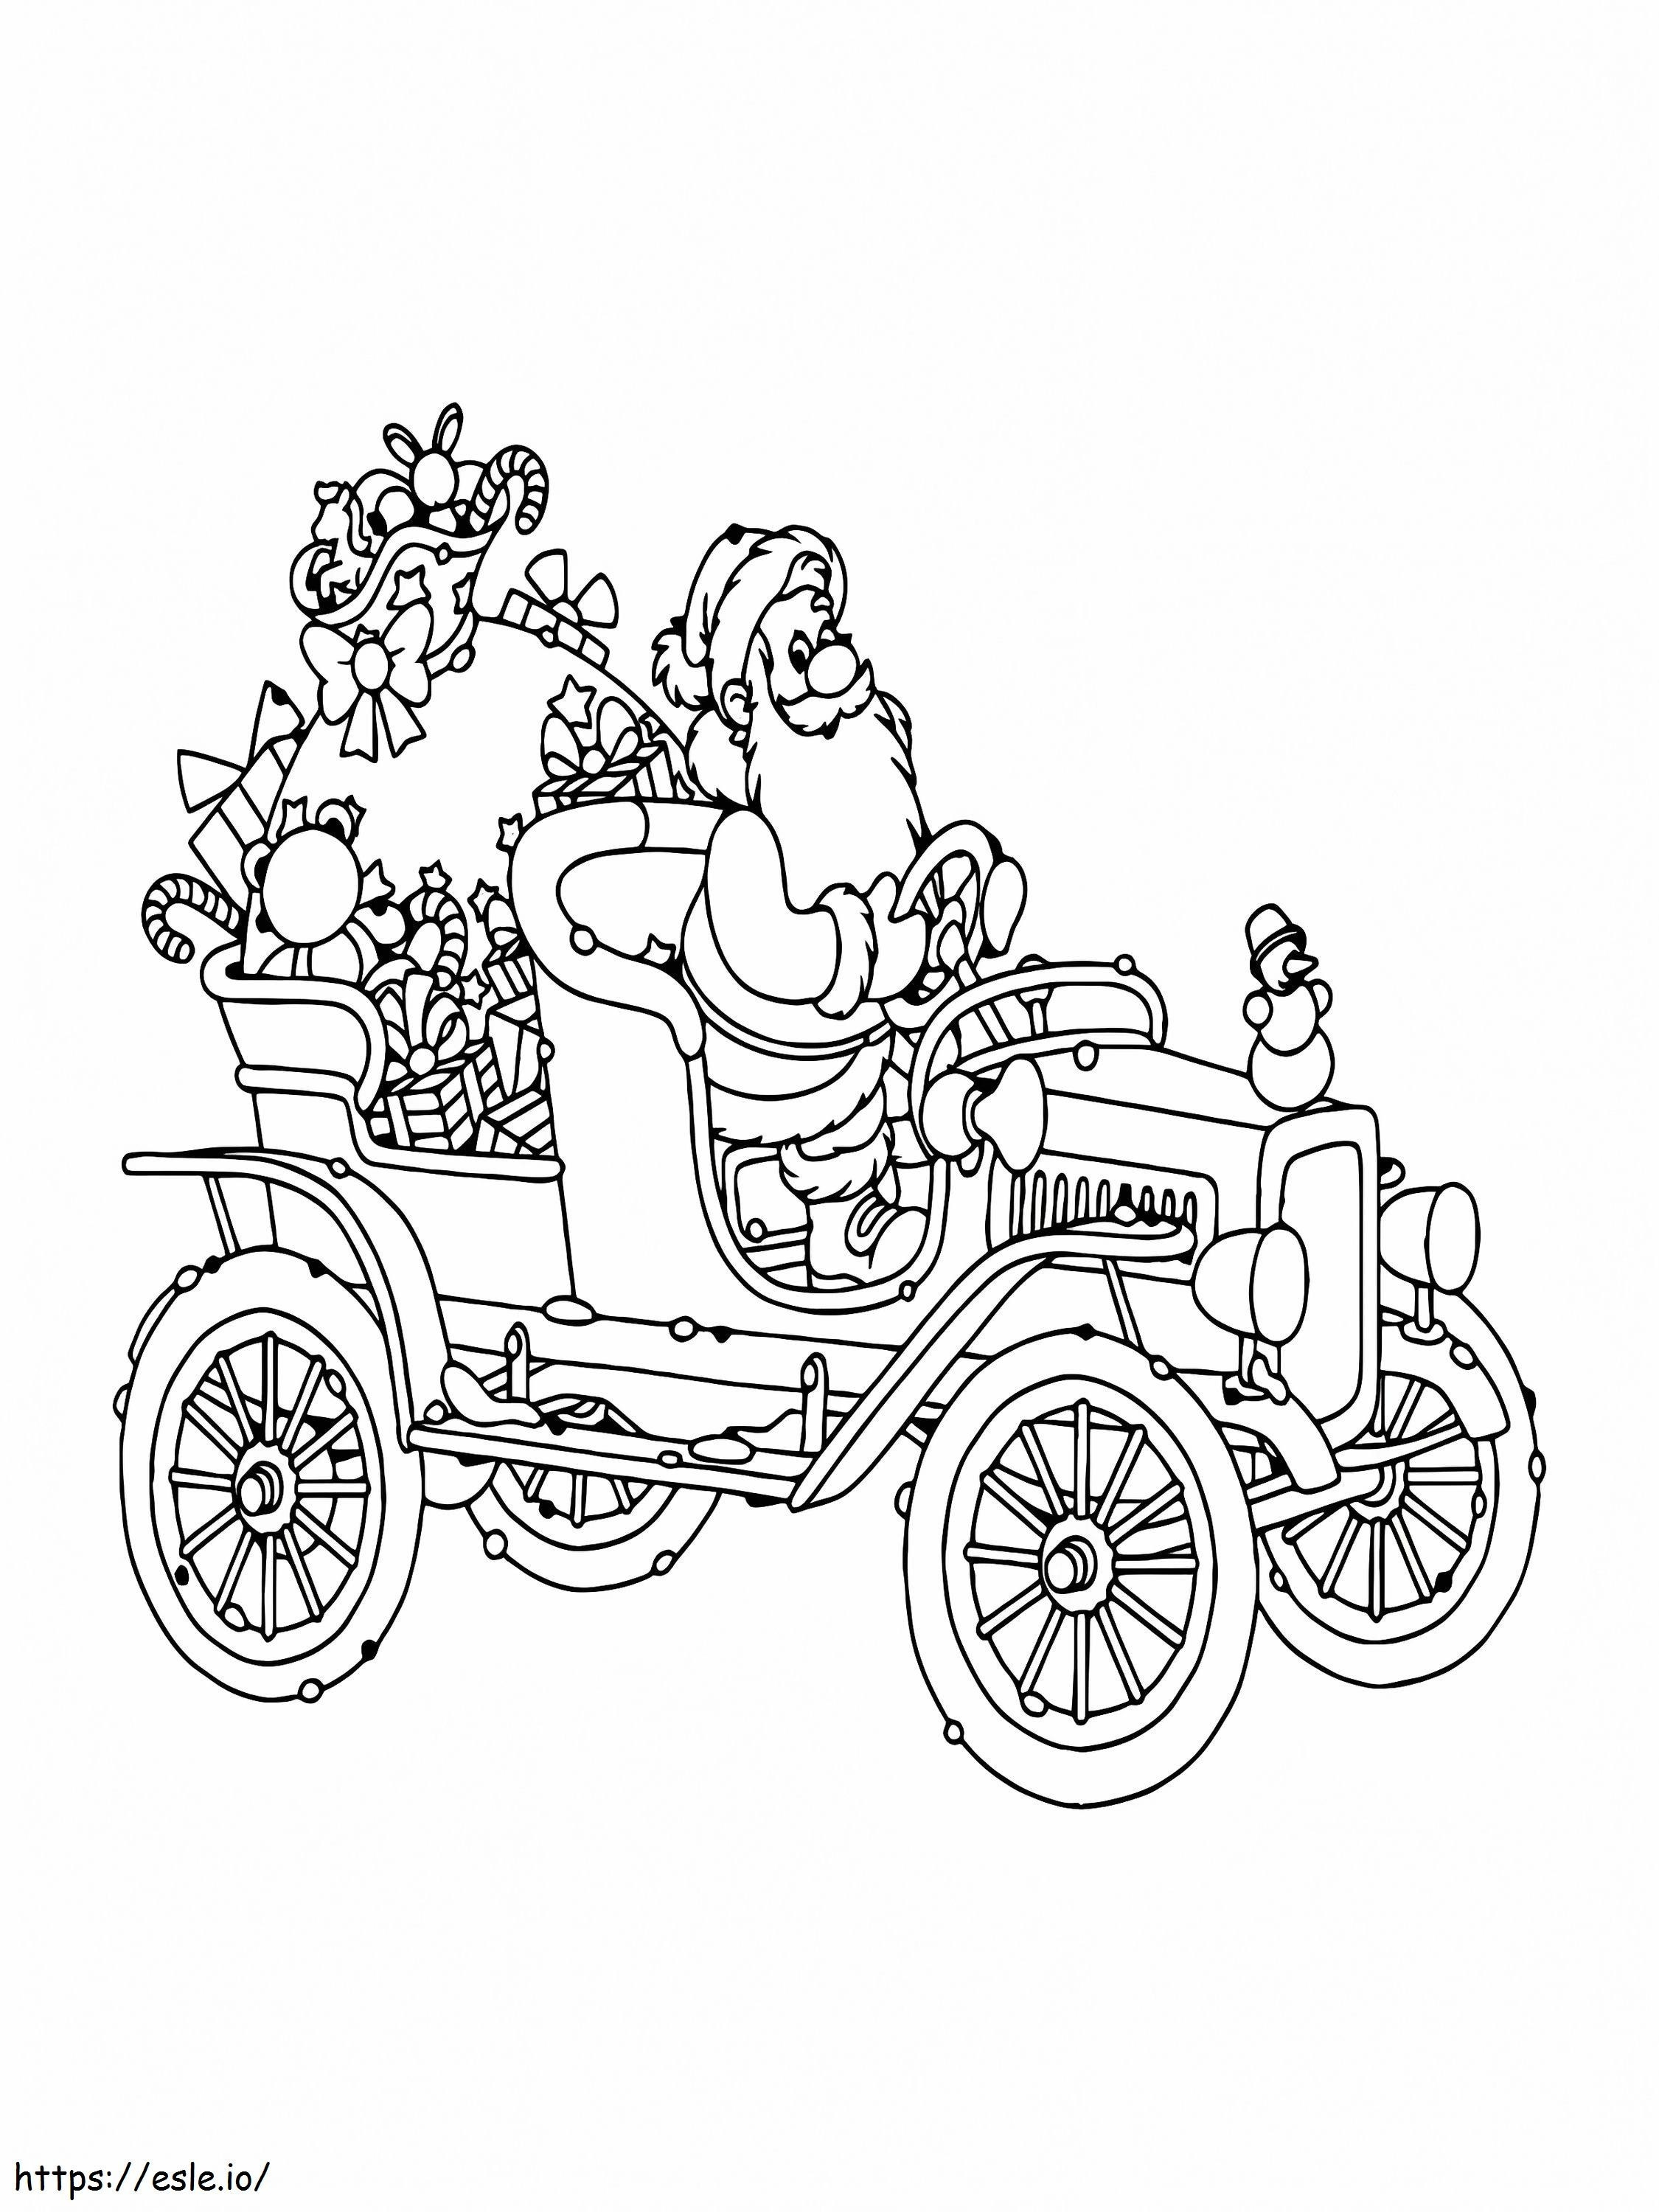 Babbo Natale alla guida della sua auto da colorare